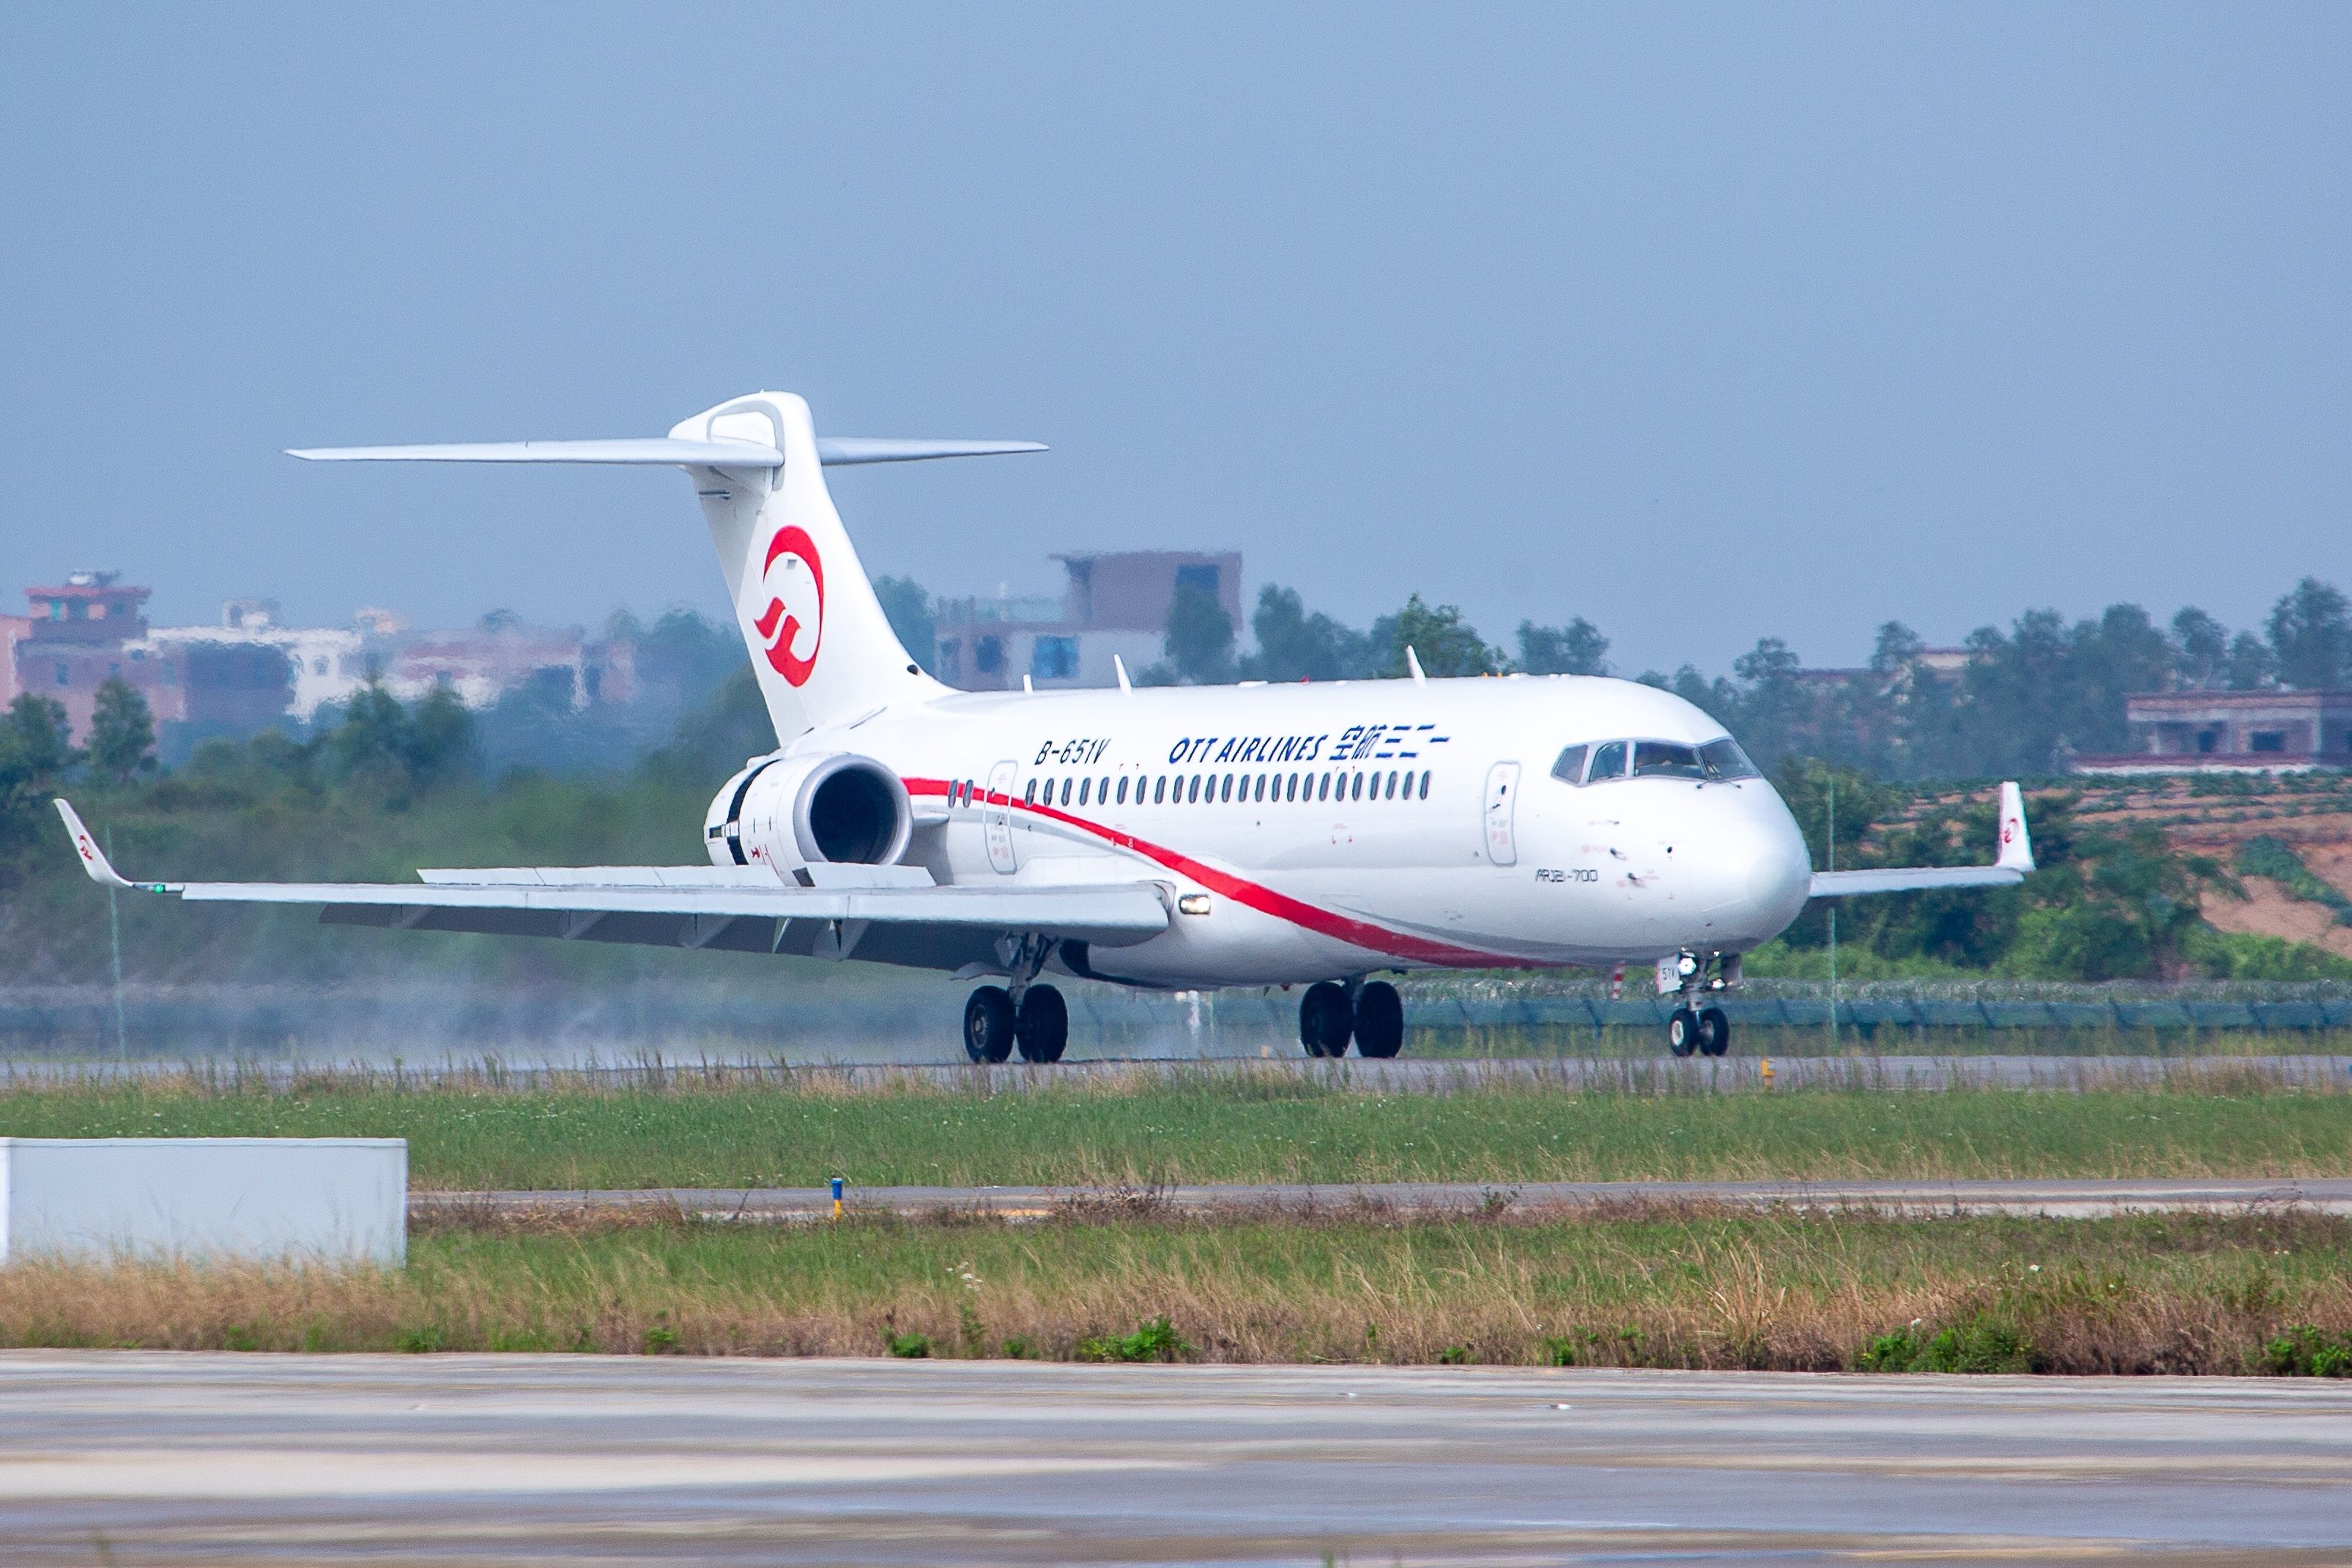 OTT airline ARJ21-700 landing at Zhanjiang Wuchuan airport